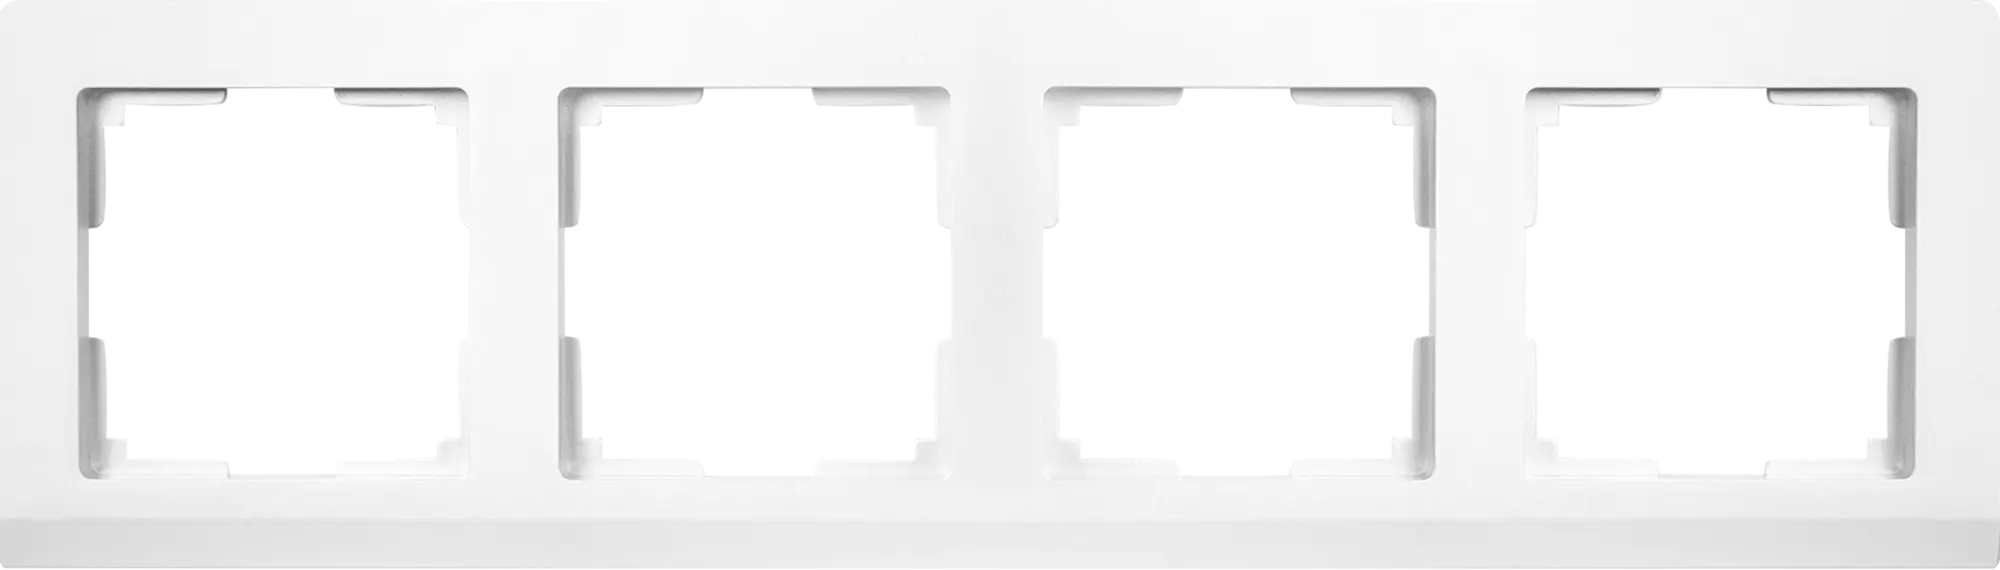 Рамка для розеток и выключателей Werkel Stark 4 поста, цвет серебристый рамка для розеток и выключателей werkel stark 2 поста цвет белый